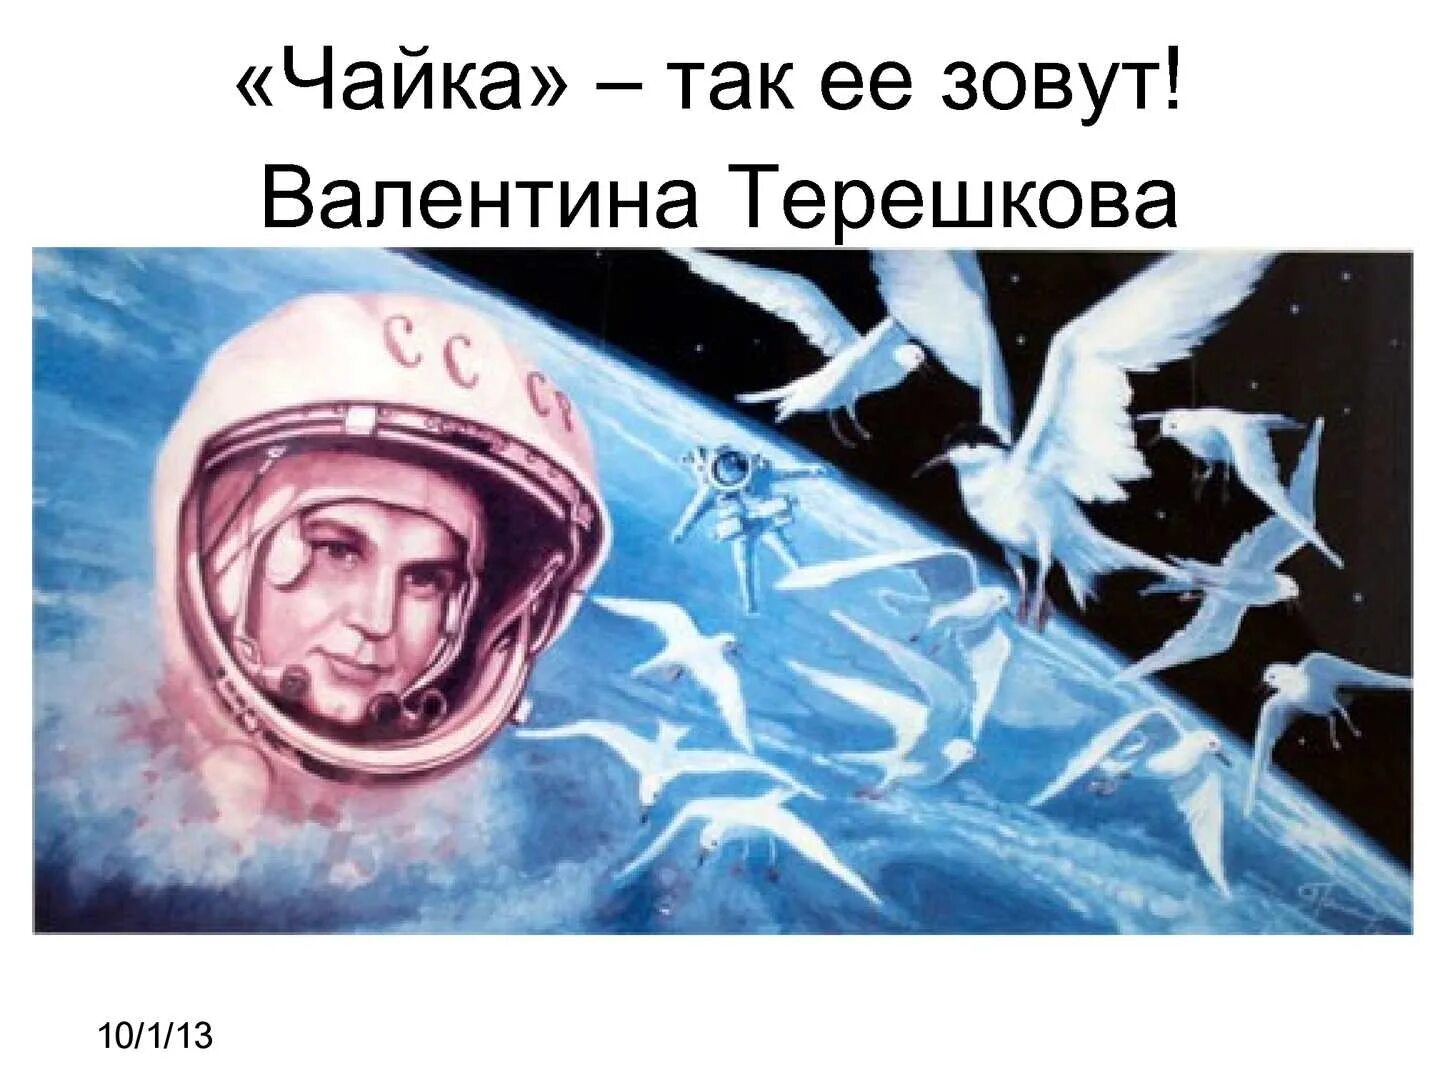 Первый полет в космос годовщина. Космонавт Терешкова Чайка Советский плакат.